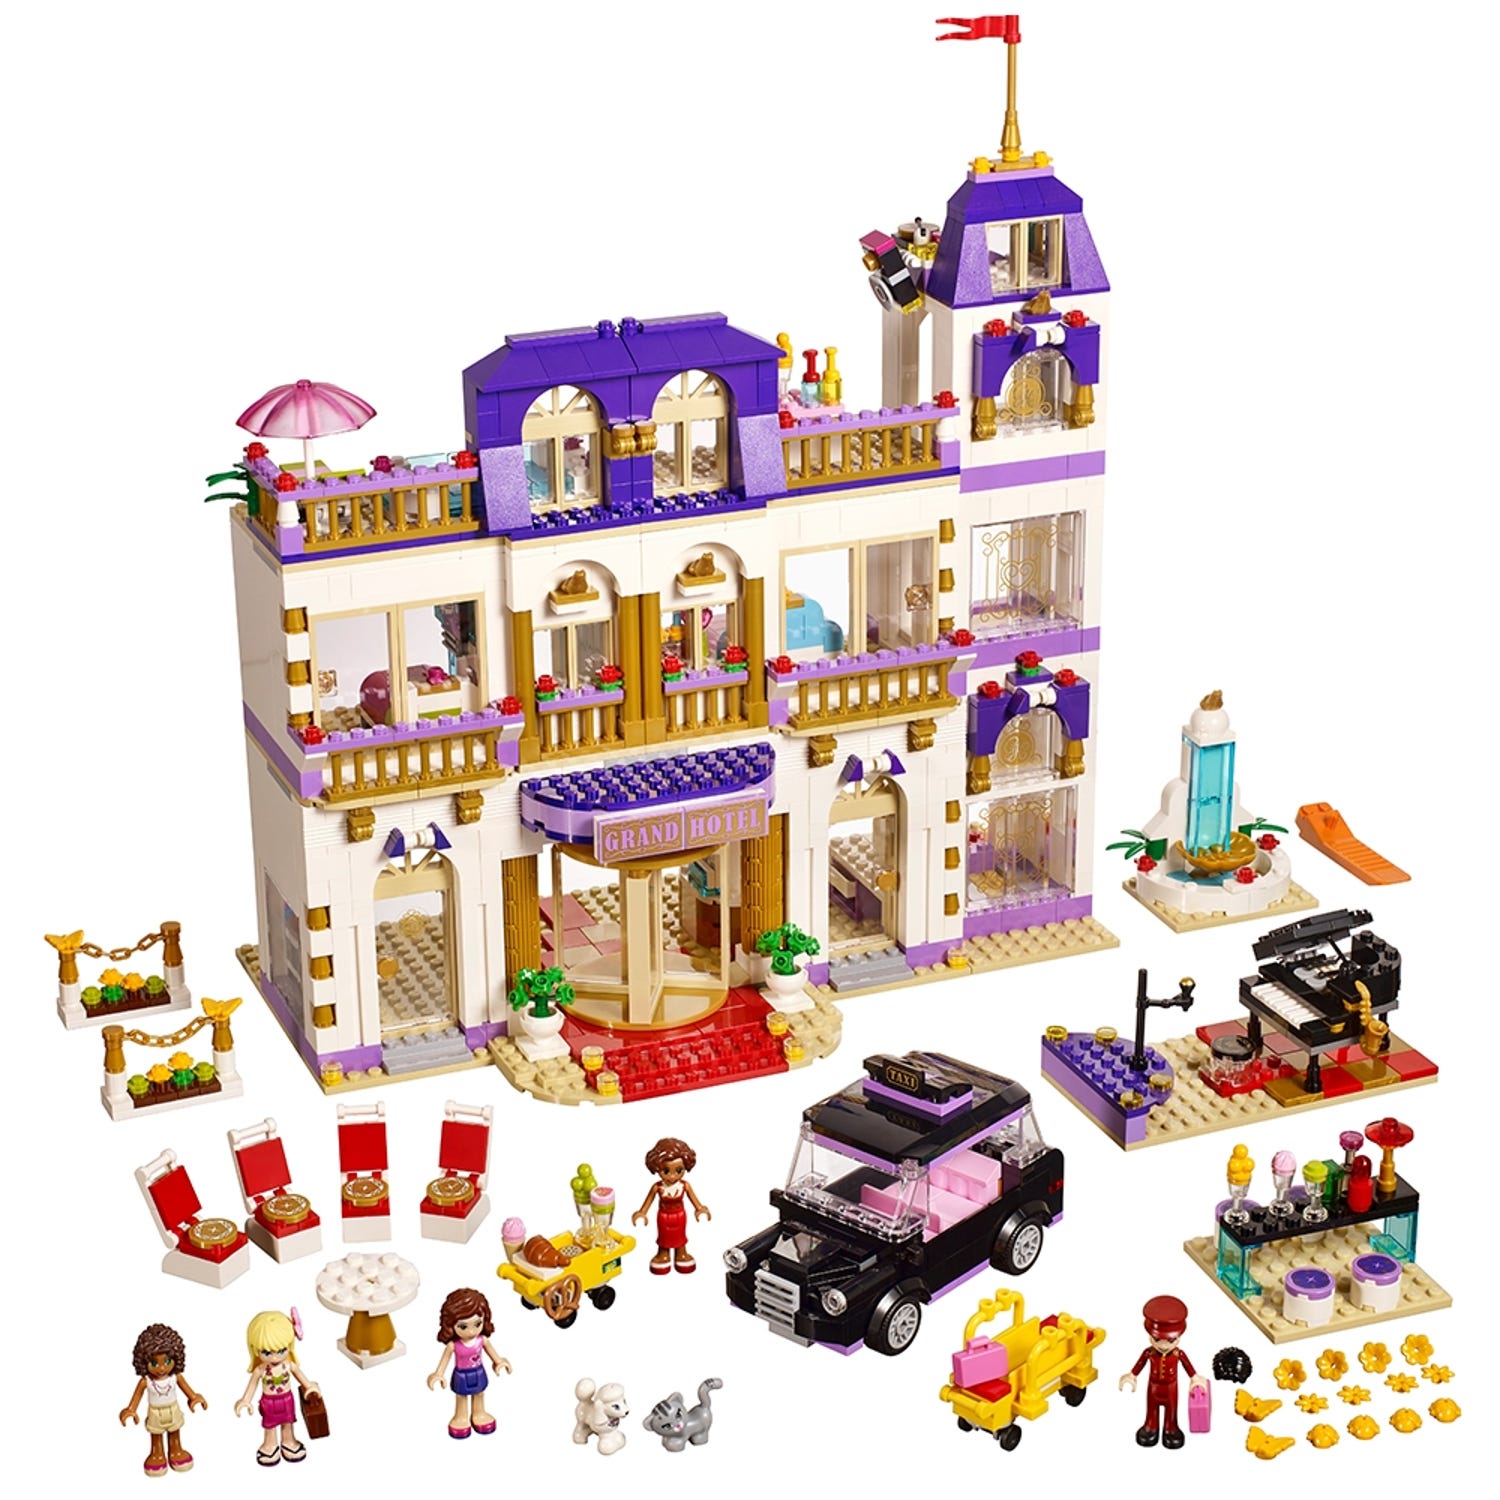 afspejle Transplant filosof Heartlake Grand Hotel 41101 | Friends | Buy online at the Official LEGO®  Shop US